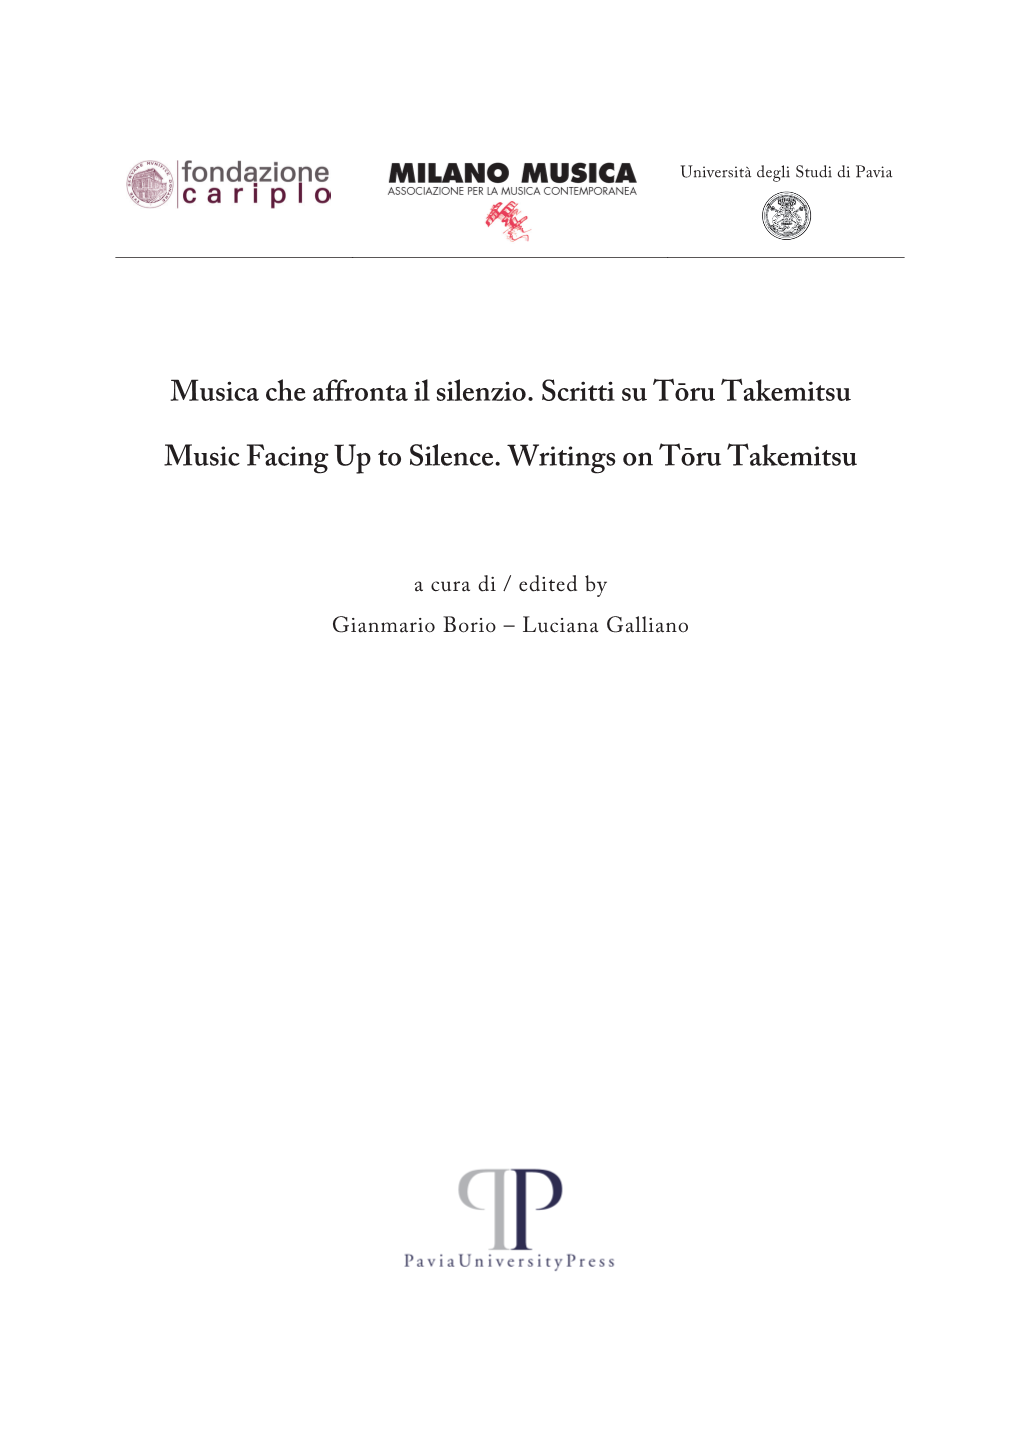 Gianmario Borio, Luciana Galliano, Musica Che Affronta Il Silenzio. Scritti Su Tōru Takemitsu, Pavia, Pavia University Press, 2